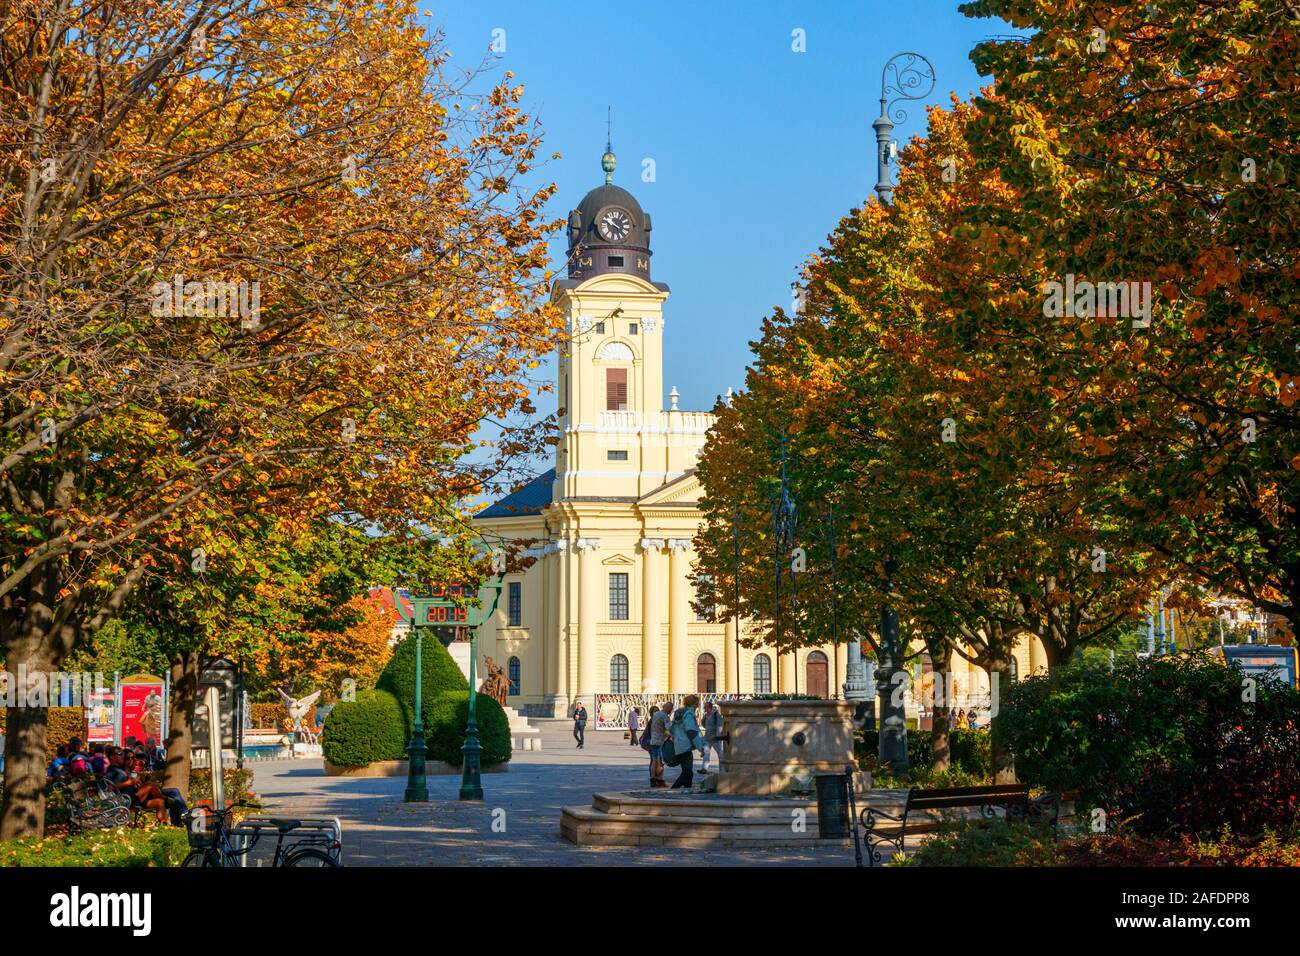 Grande Chiesa Riformata presso la piazza Kossuth con alberi in autunno colori in una giornata di sole. Debrecen, Ungheria. Foto Stock